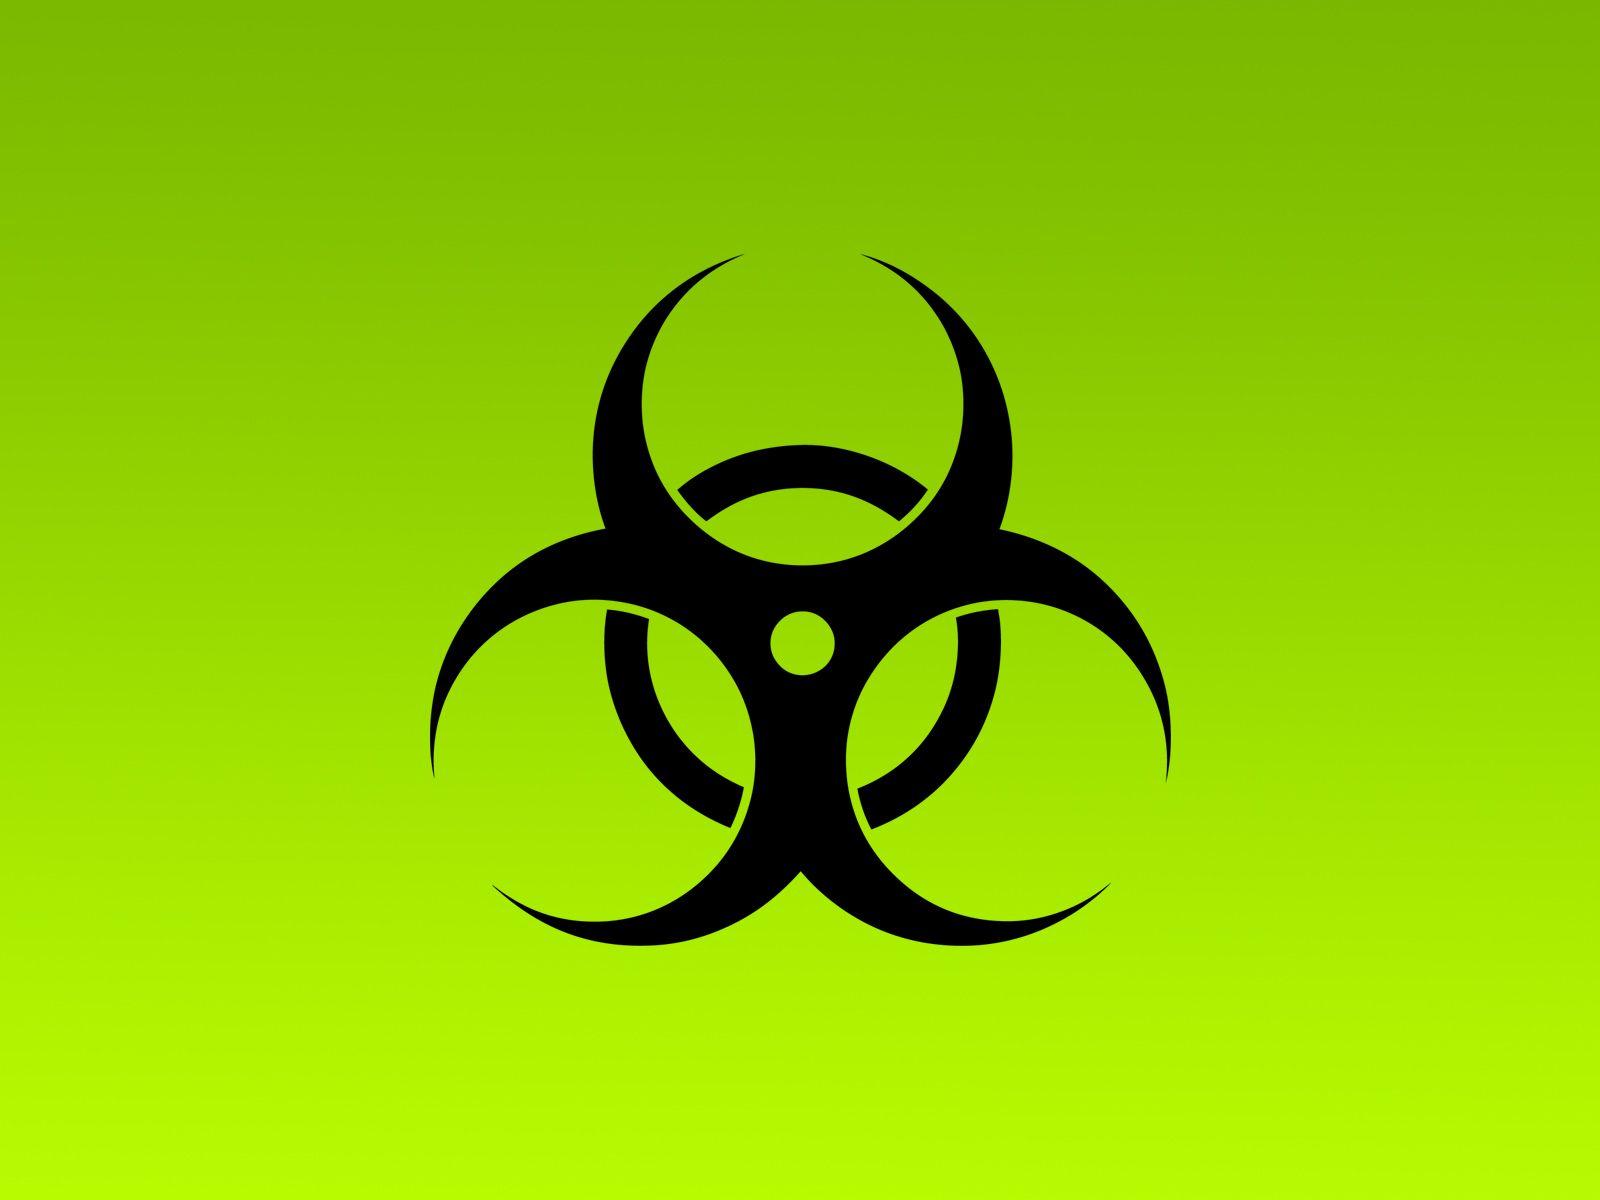 Radioactive Logo - Radioactive Symbol Wallpapers - Wallpaper Cave